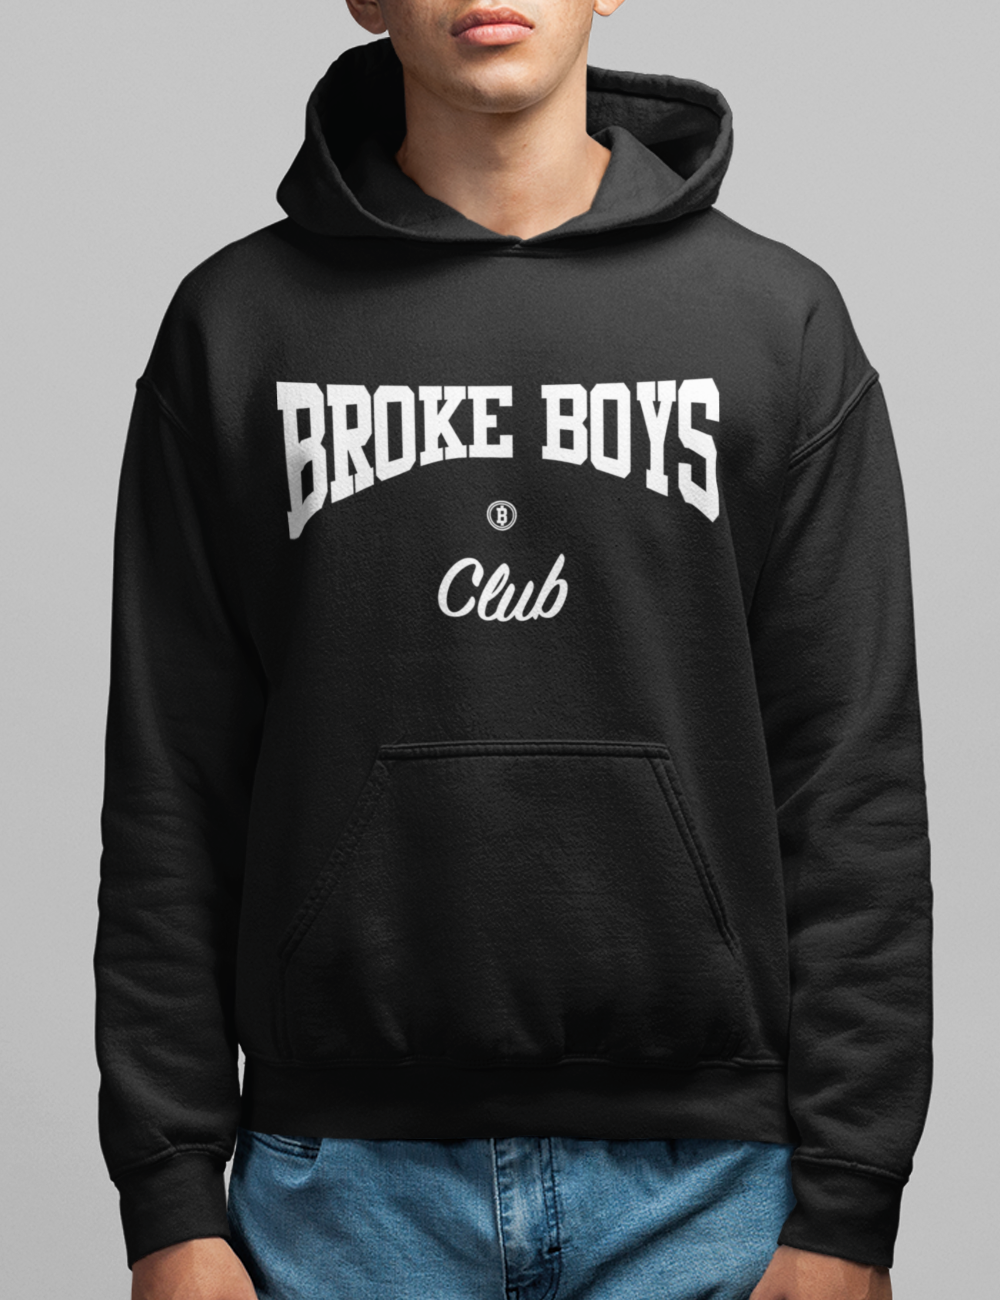 Broke Boys Club | Hoodie OniTakai